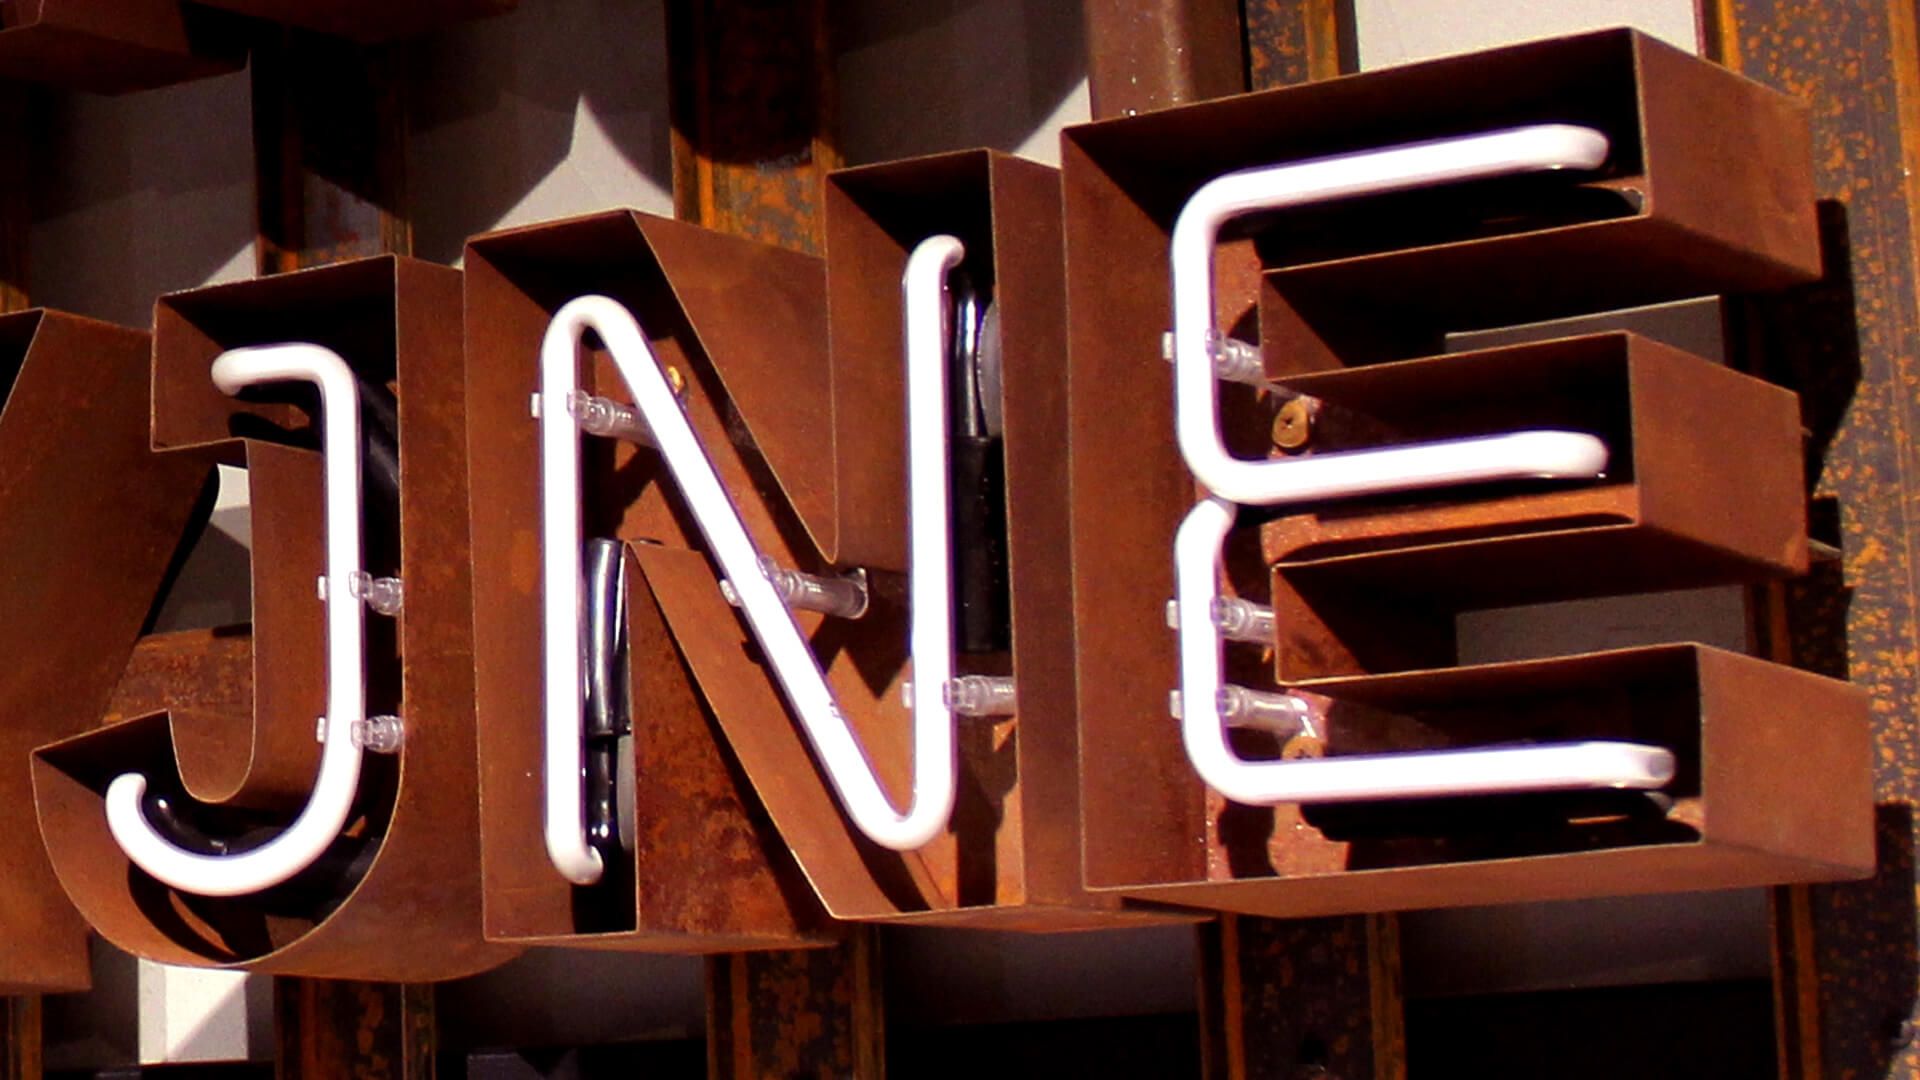 Lettres rouillées - Lettres en tôle rouillée avec intérieur en néon